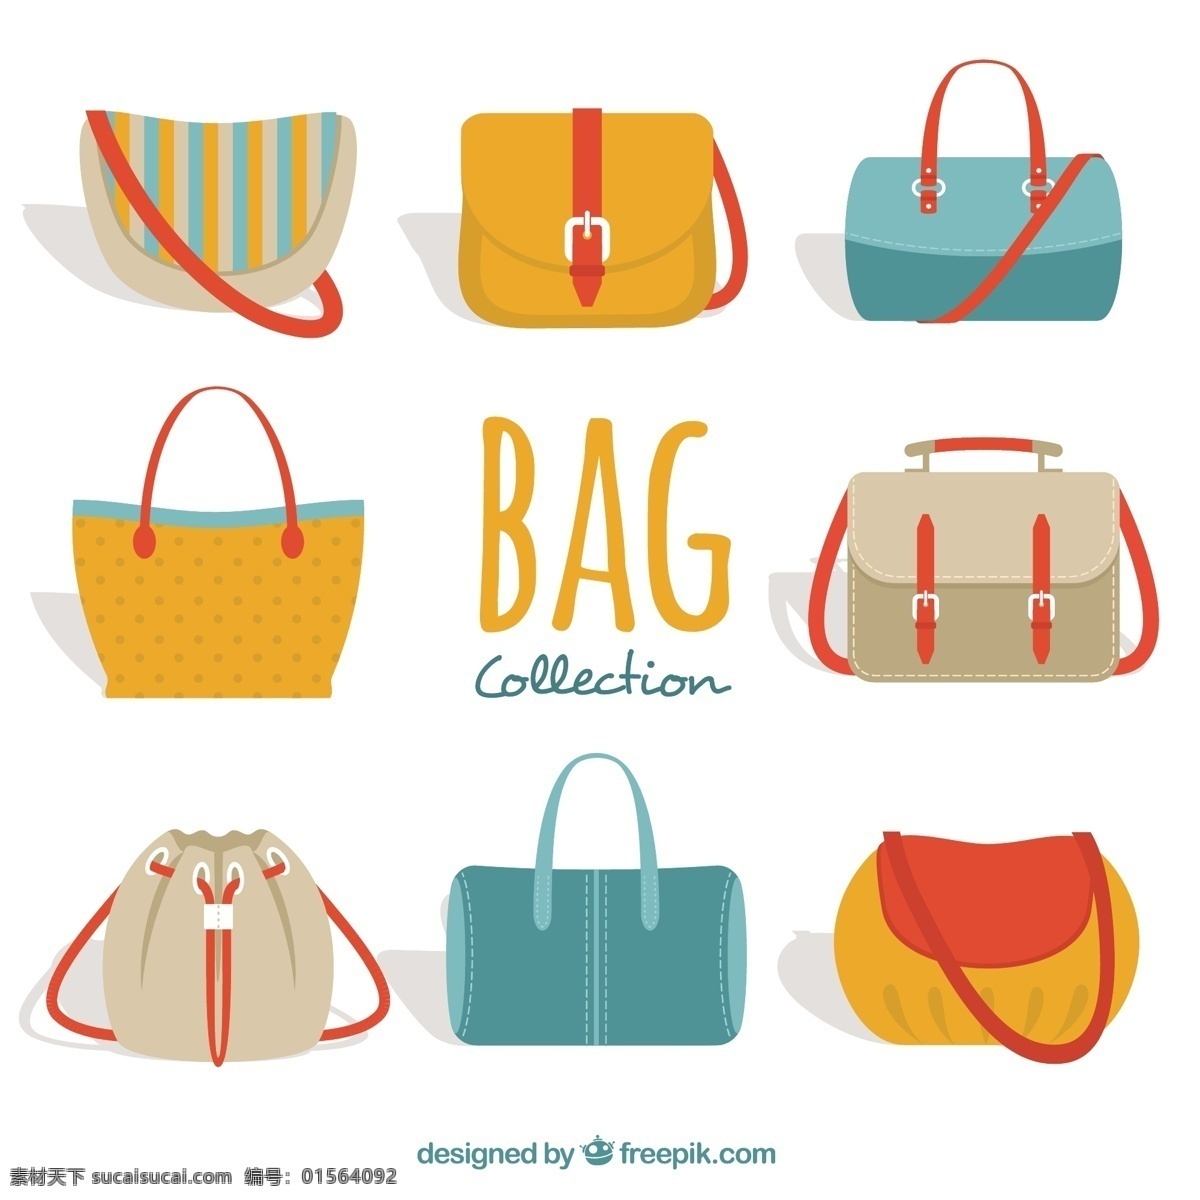 大 收藏 丰富多彩 女人 包 时尚 购物 平 存储 购物袋 平面设计 箱包 手袋 不错 配件